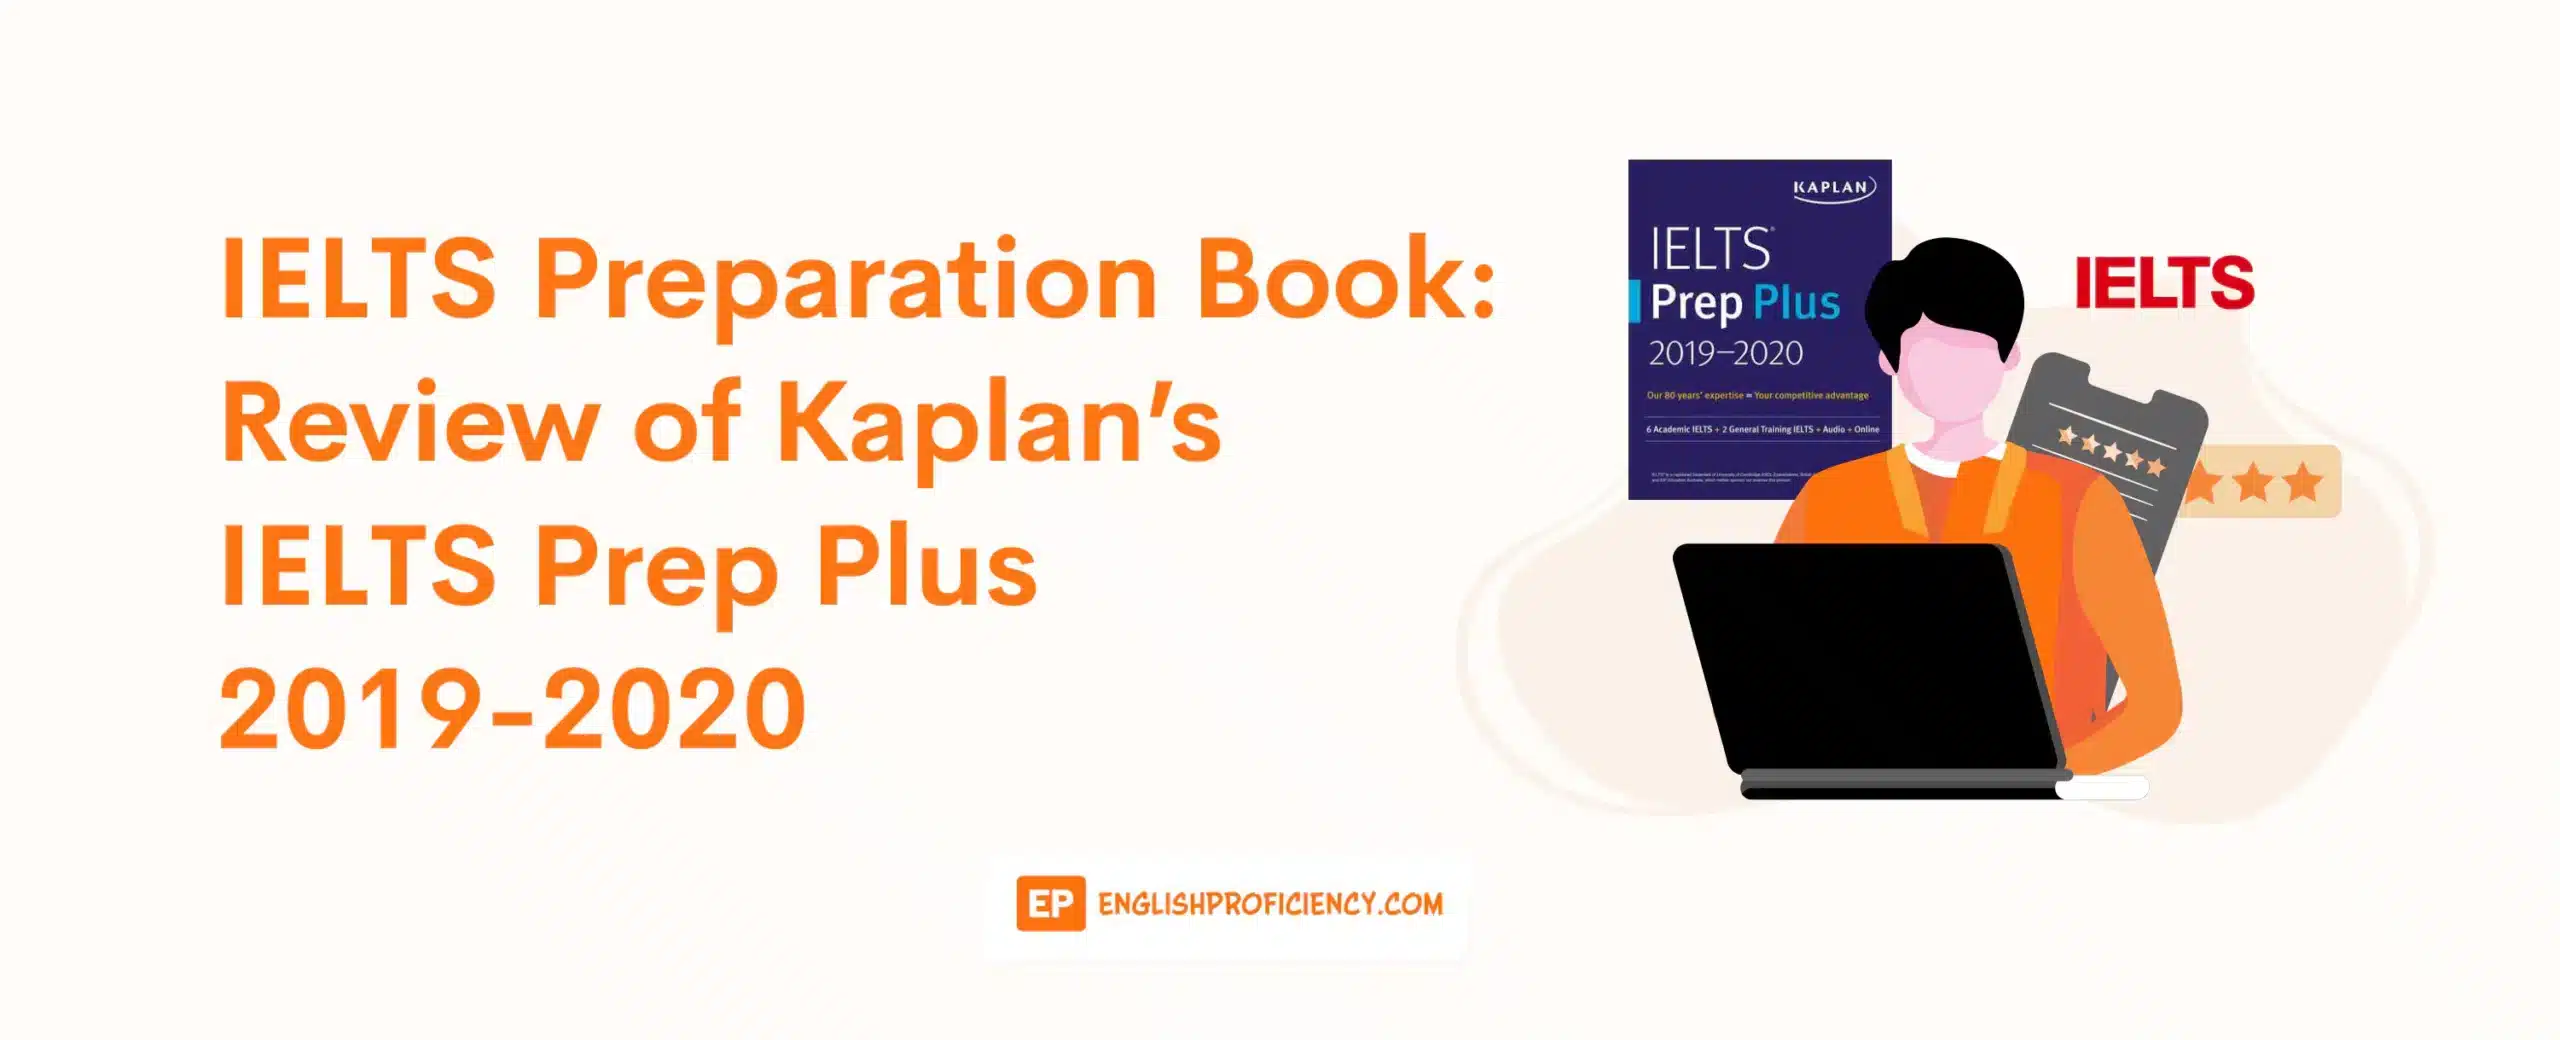 IELTS Preparation Book Review of Kaplan’s IELTS Prep Plus 2019-2020